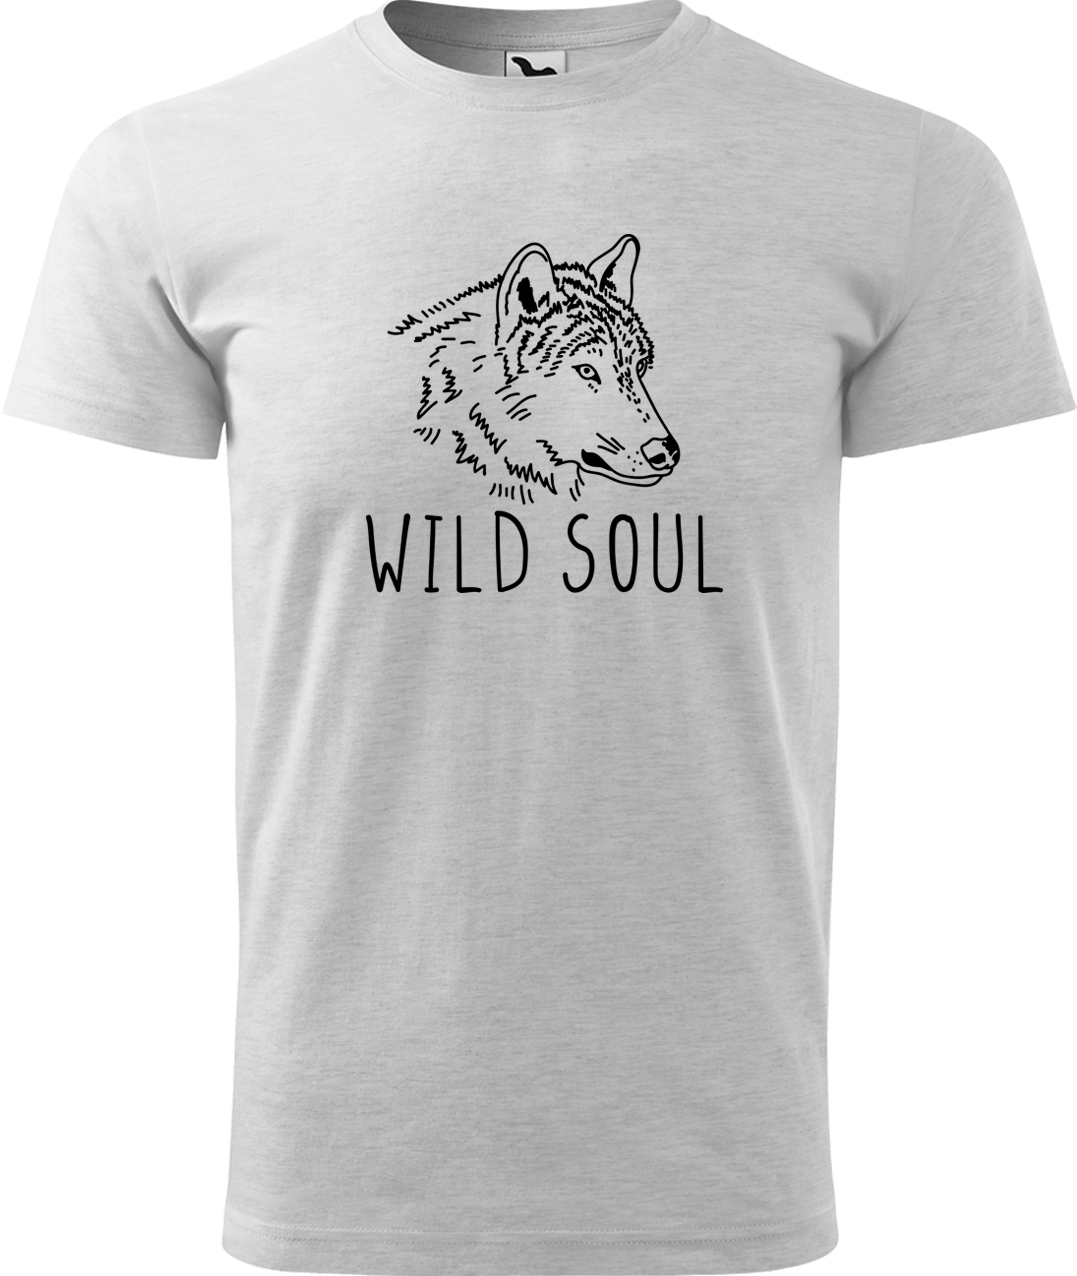 Pánské tričko s vlkem - Wild soul Velikost: L, Barva: Světle šedý melír (03), Střih: pánský